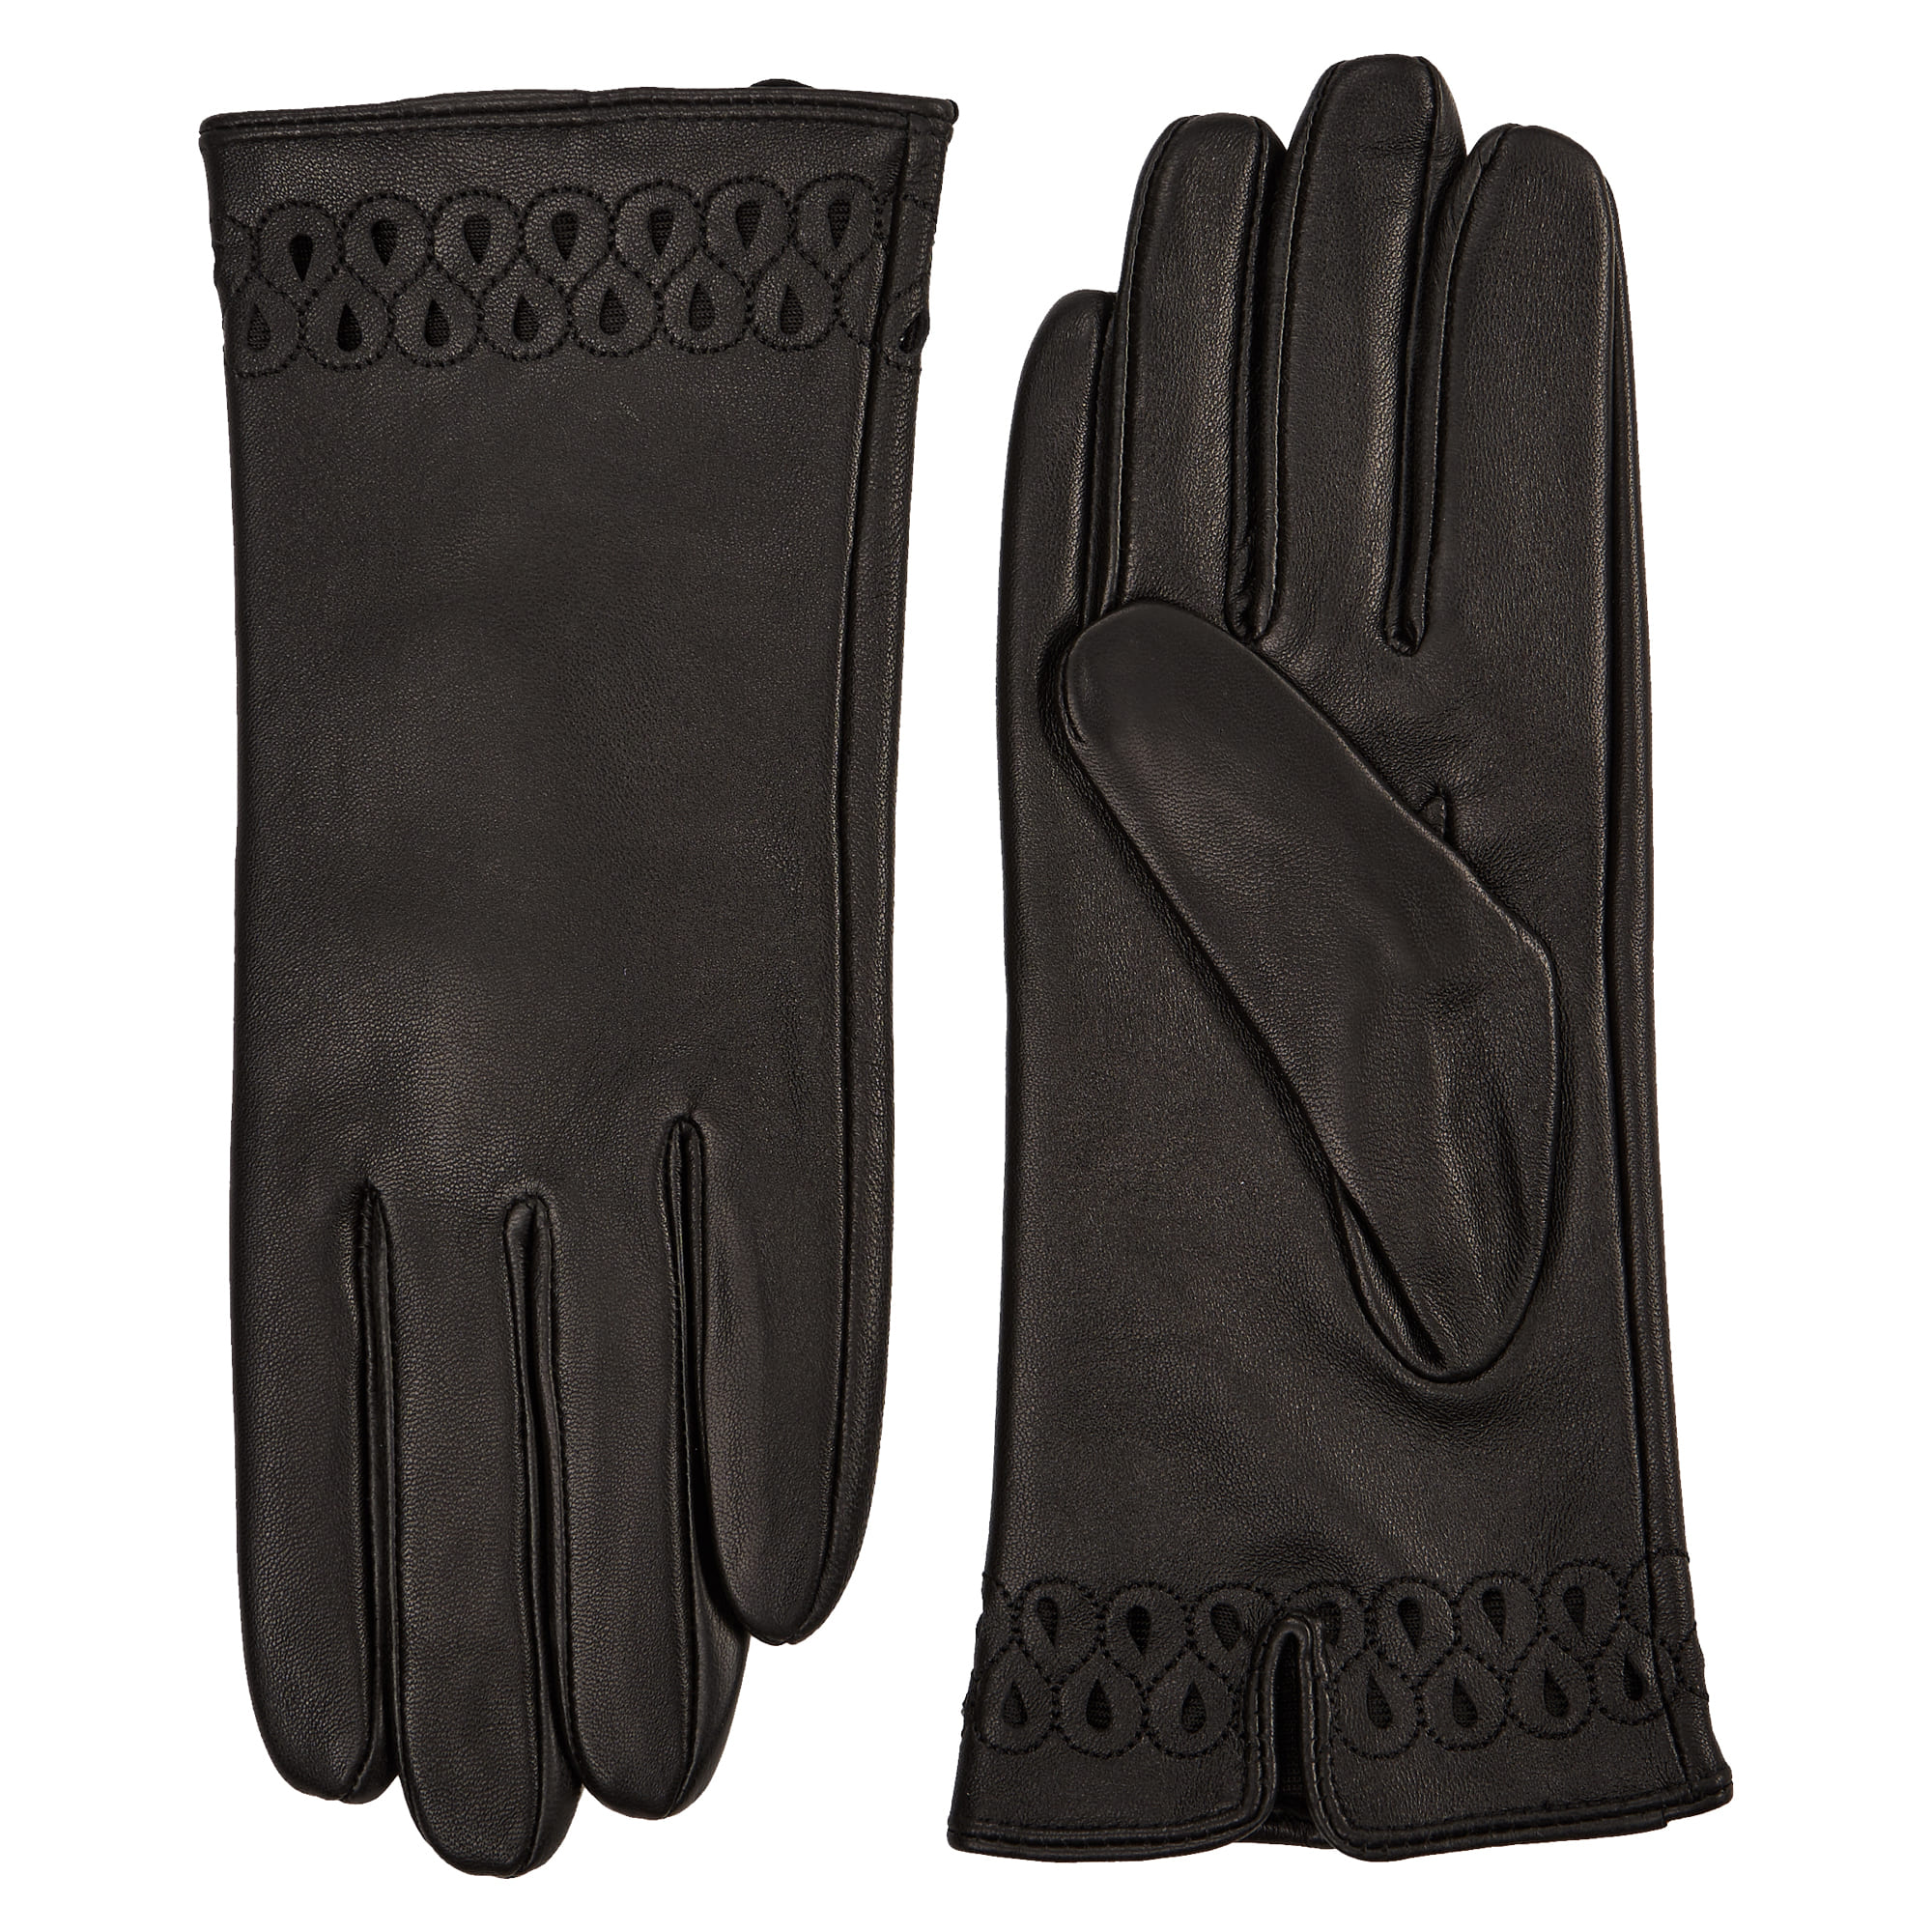 Др.Коффер H660148-236-04 перчатки женские touch (6,5), размер 6, цвет черный - фото 1